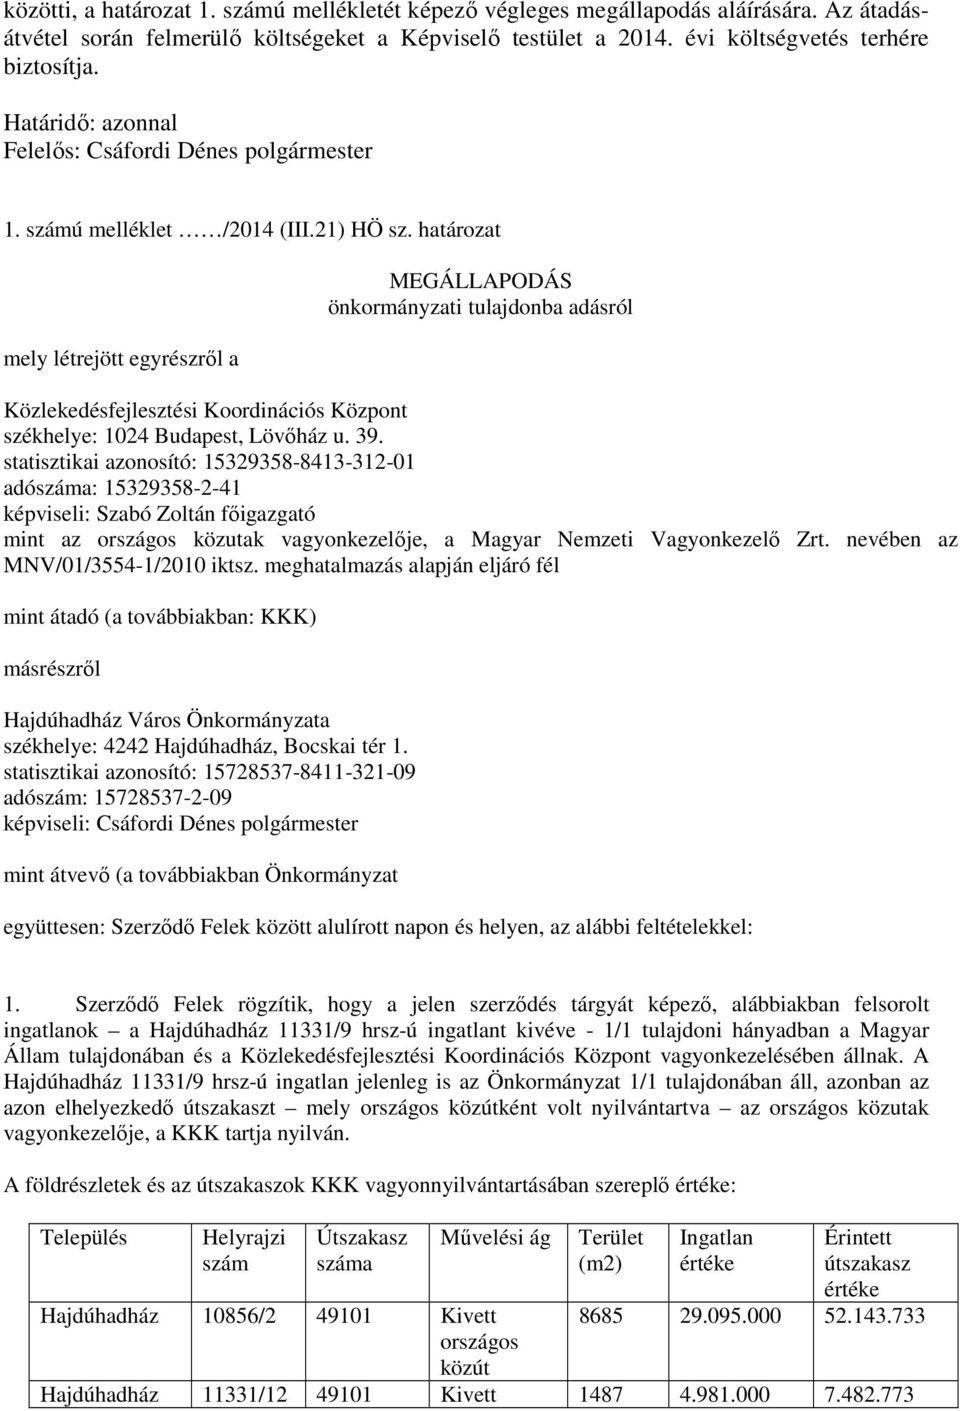 határozat mely létrejött egyrészről a MEGÁLLAPODÁS önkormányzati tulajdonba adásról Közlekedésfejlesztési Koordinációs Központ székhelye: 1024 Budapest, Lövőház u. 39.